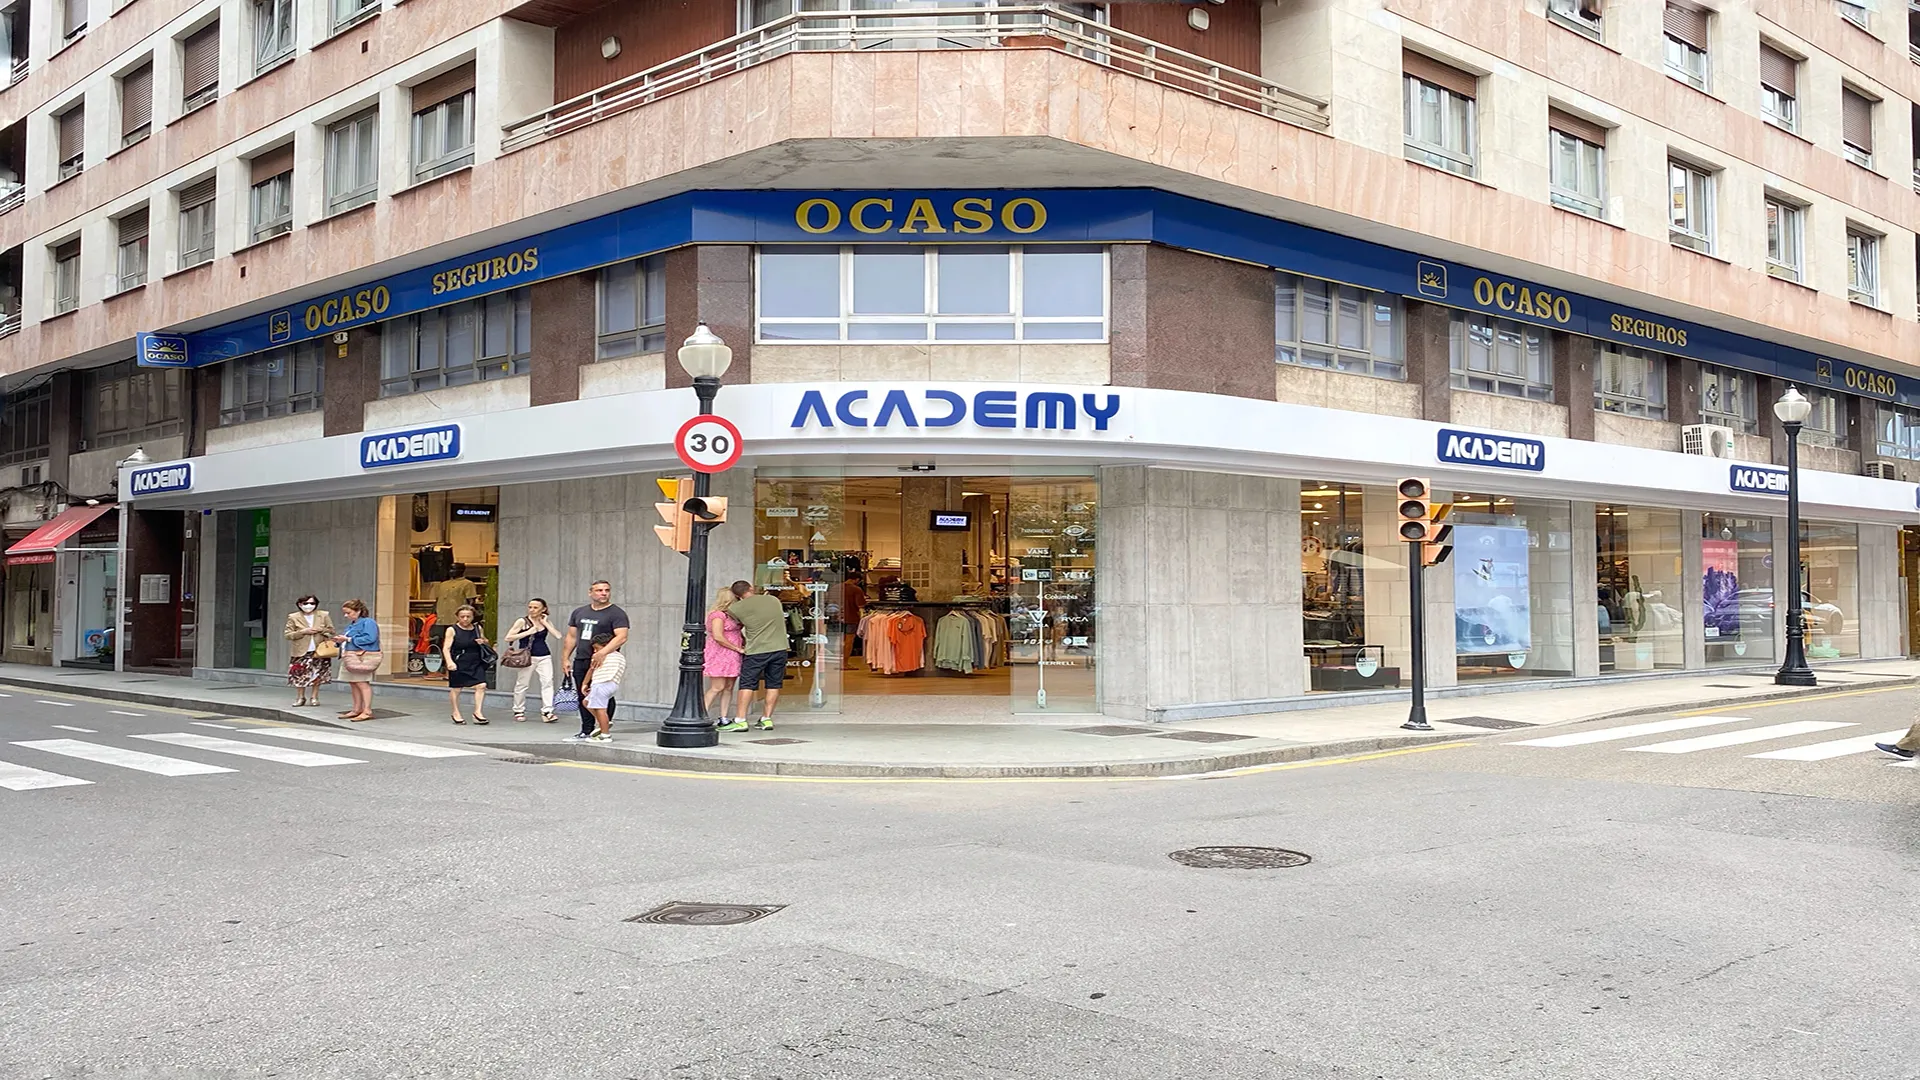 Academy Centro